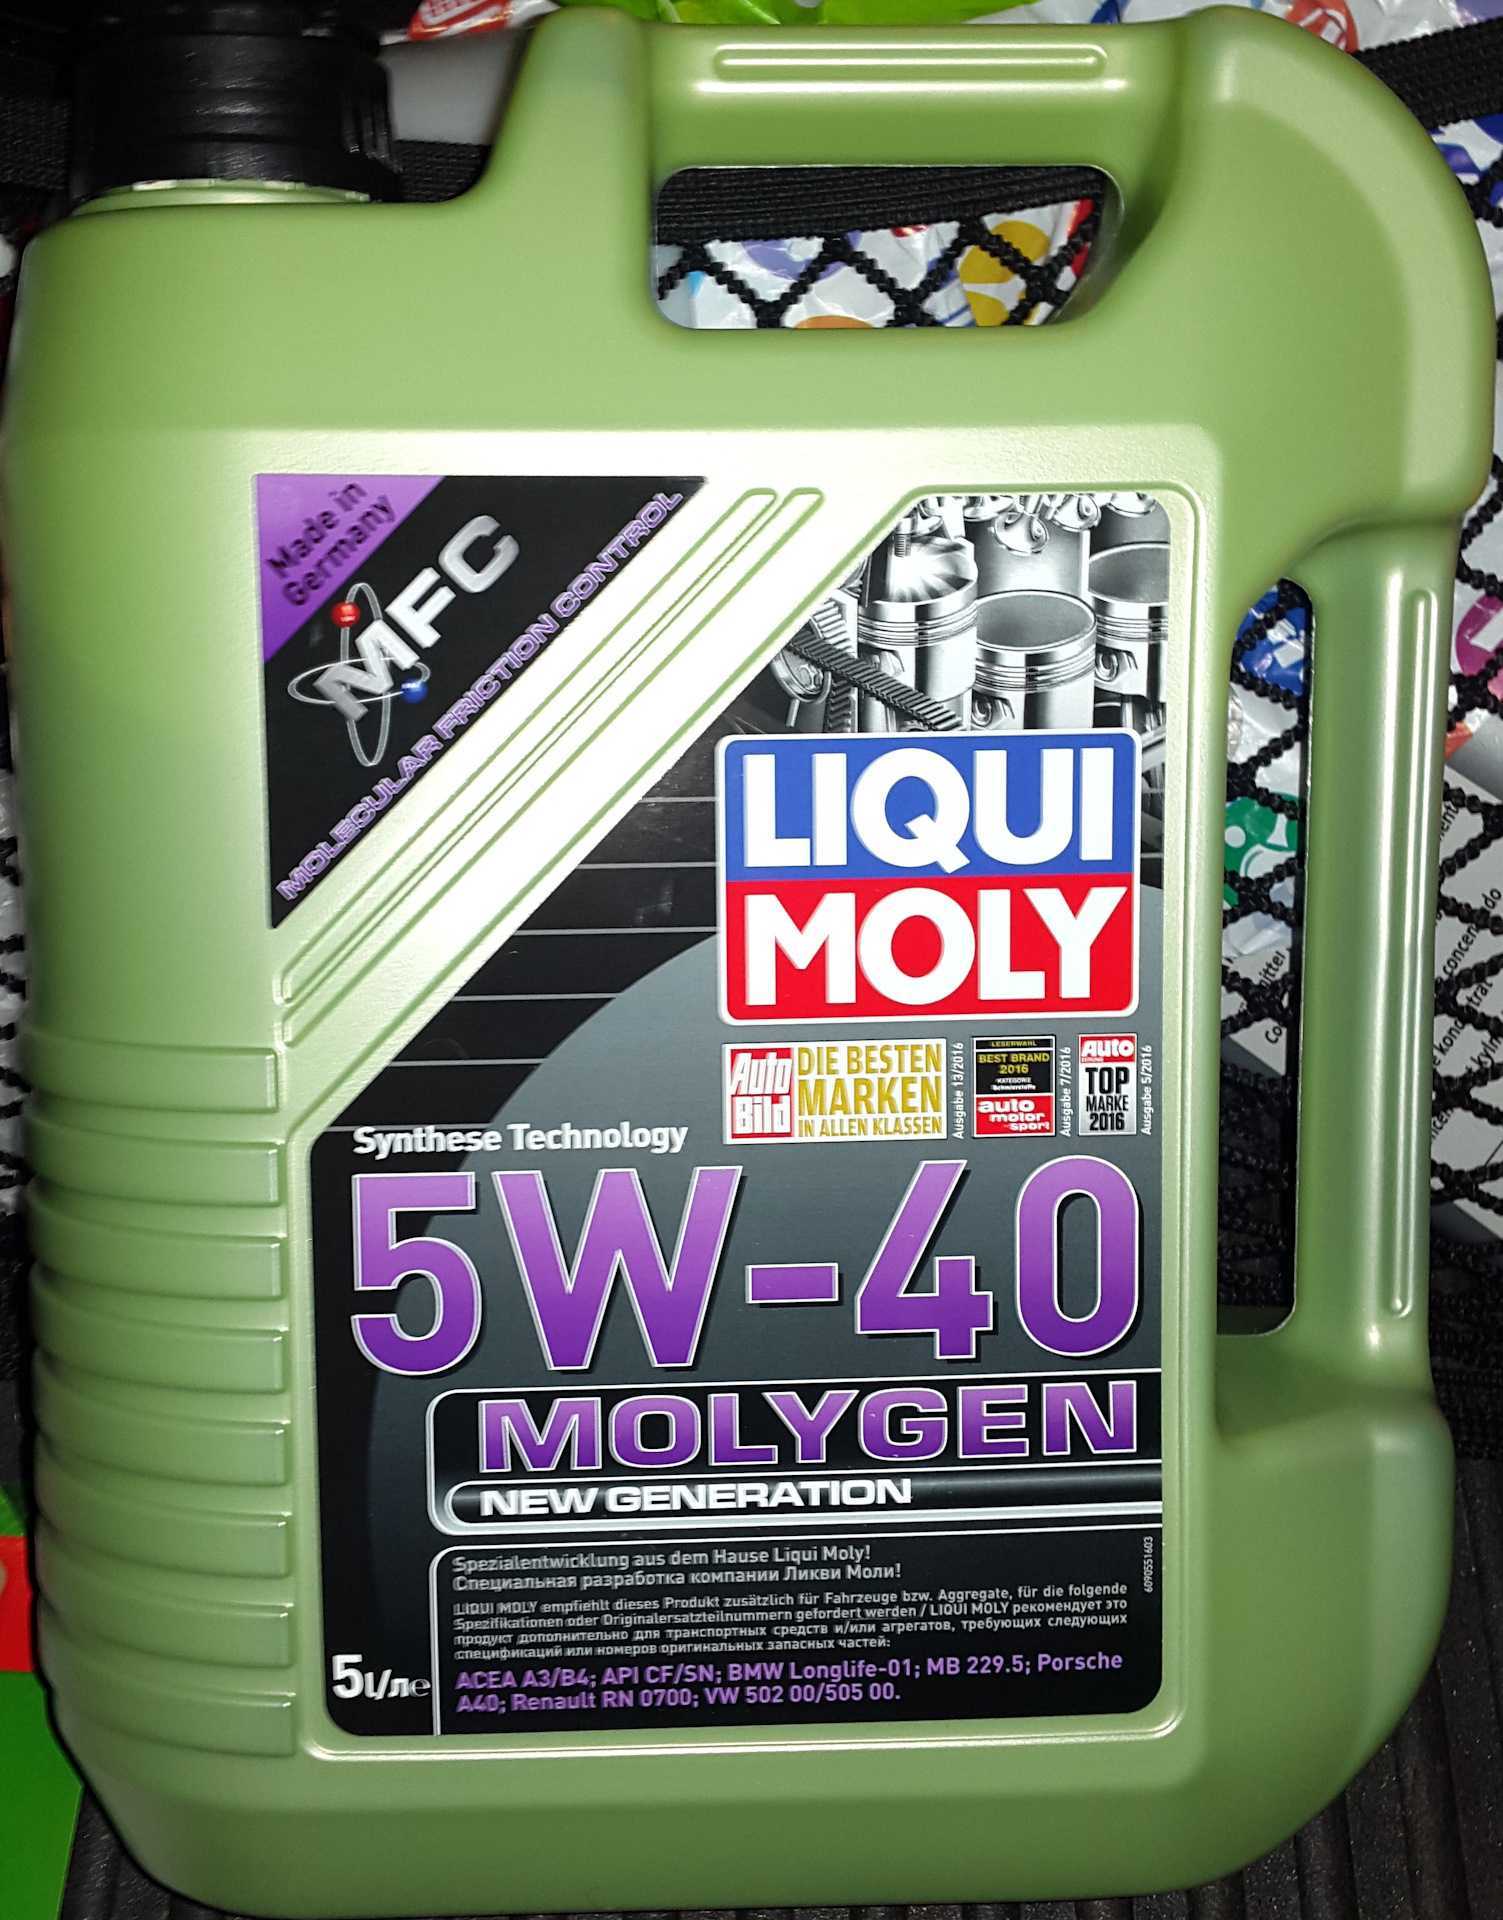 Как отличить оригинальное масло liqui moly от подделки